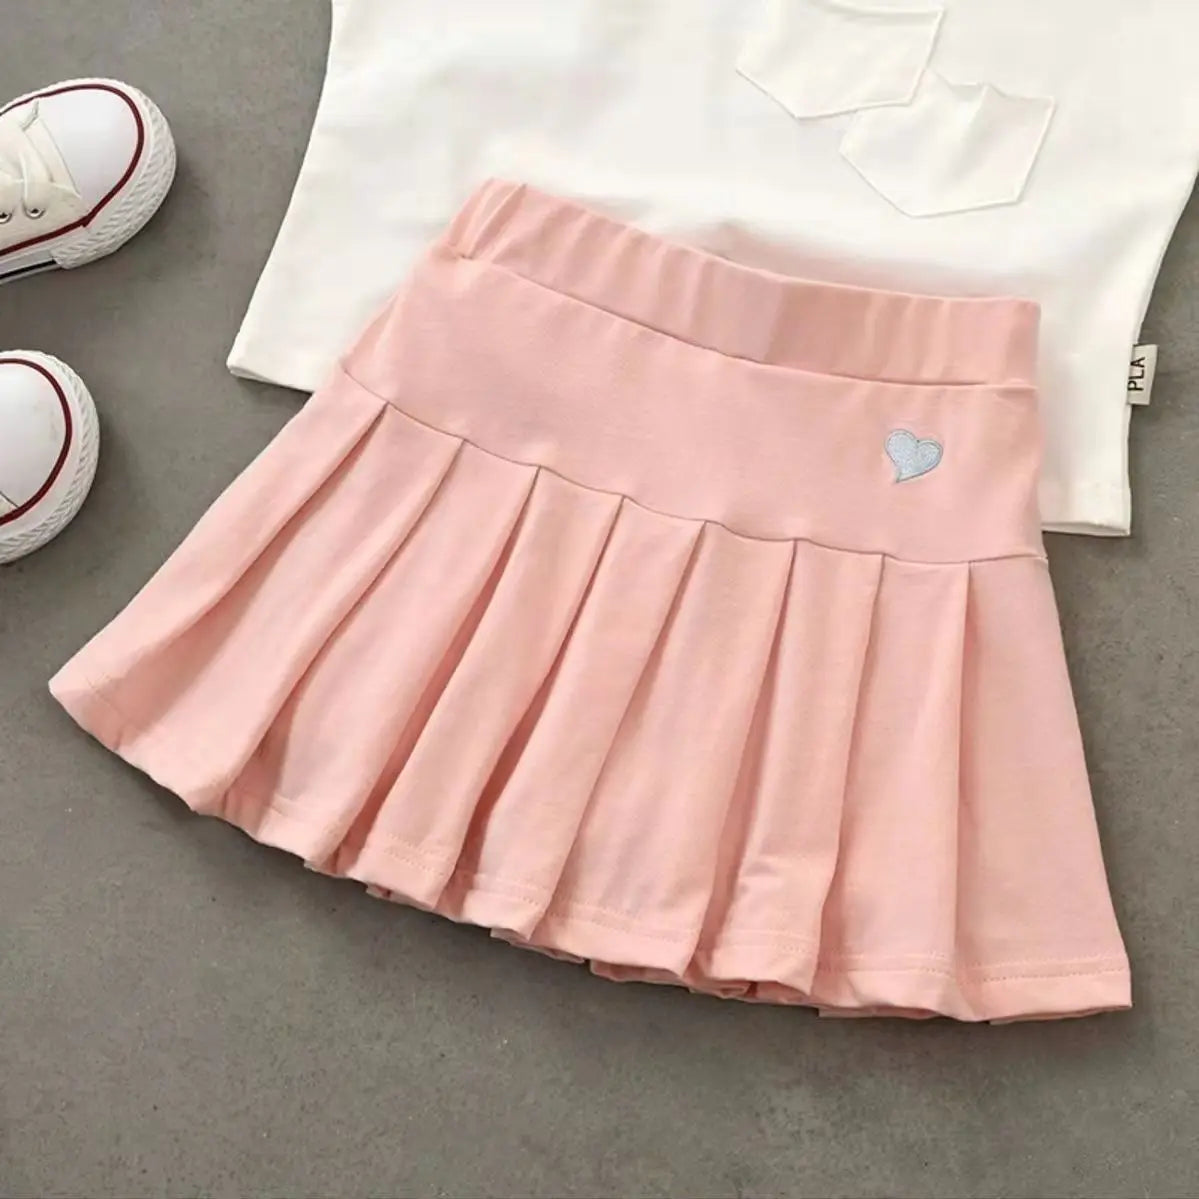 Balletcore Kawaii Aesthetic Heart Embroidery Elastic Waist Tennis Skirt - Pink / S - Bottoms - Skirts - 10 - 2024